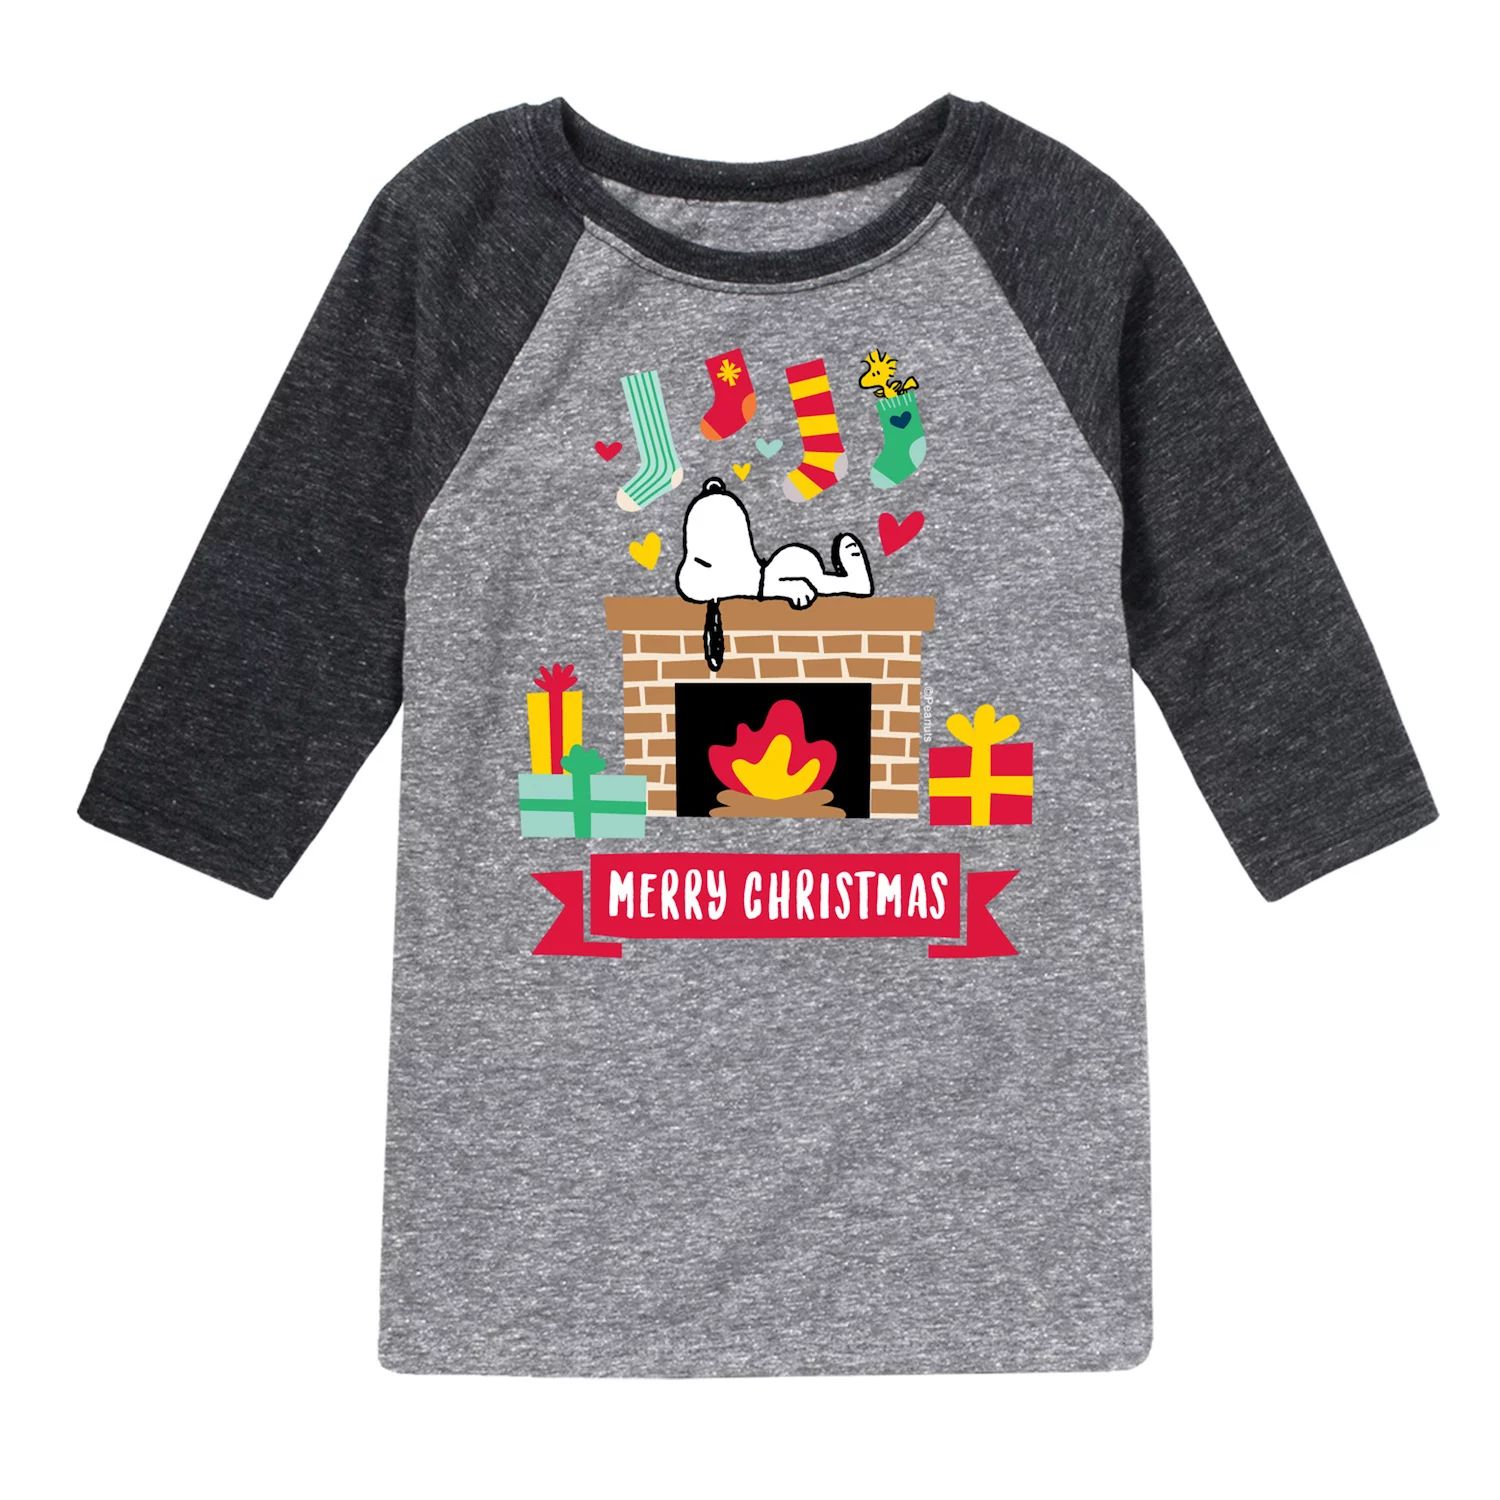 футболка с рисунком the polar express первый рождественский подарок для мальчиков 8–20 лет licensed character Футболка реглан с рисунком «Рождественский камин» для мальчиков 8–20 лет Licensed Character